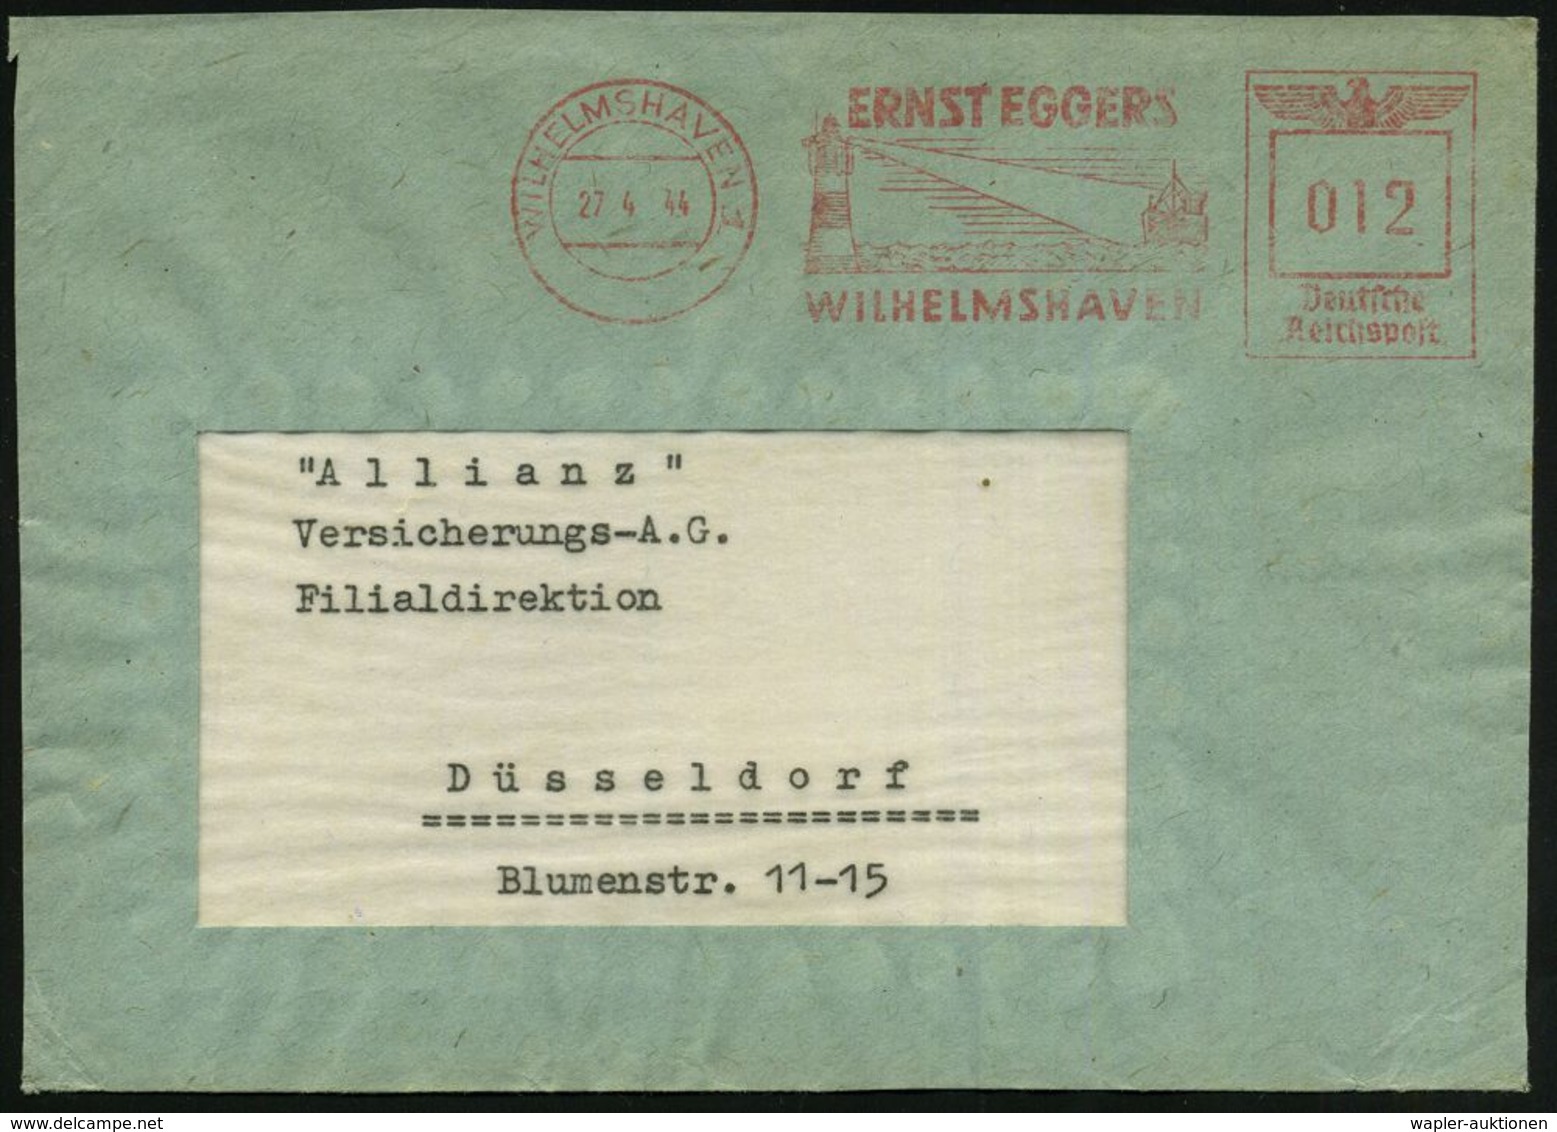 WILHELMSHAVEN 1/ ERNST EGGERS 1944 (27.4.) Dekorat. AFS = Leuchtturm (mit Lichtkegel Erfasst Schiff) Bedarfs-Vorderseite - Fari